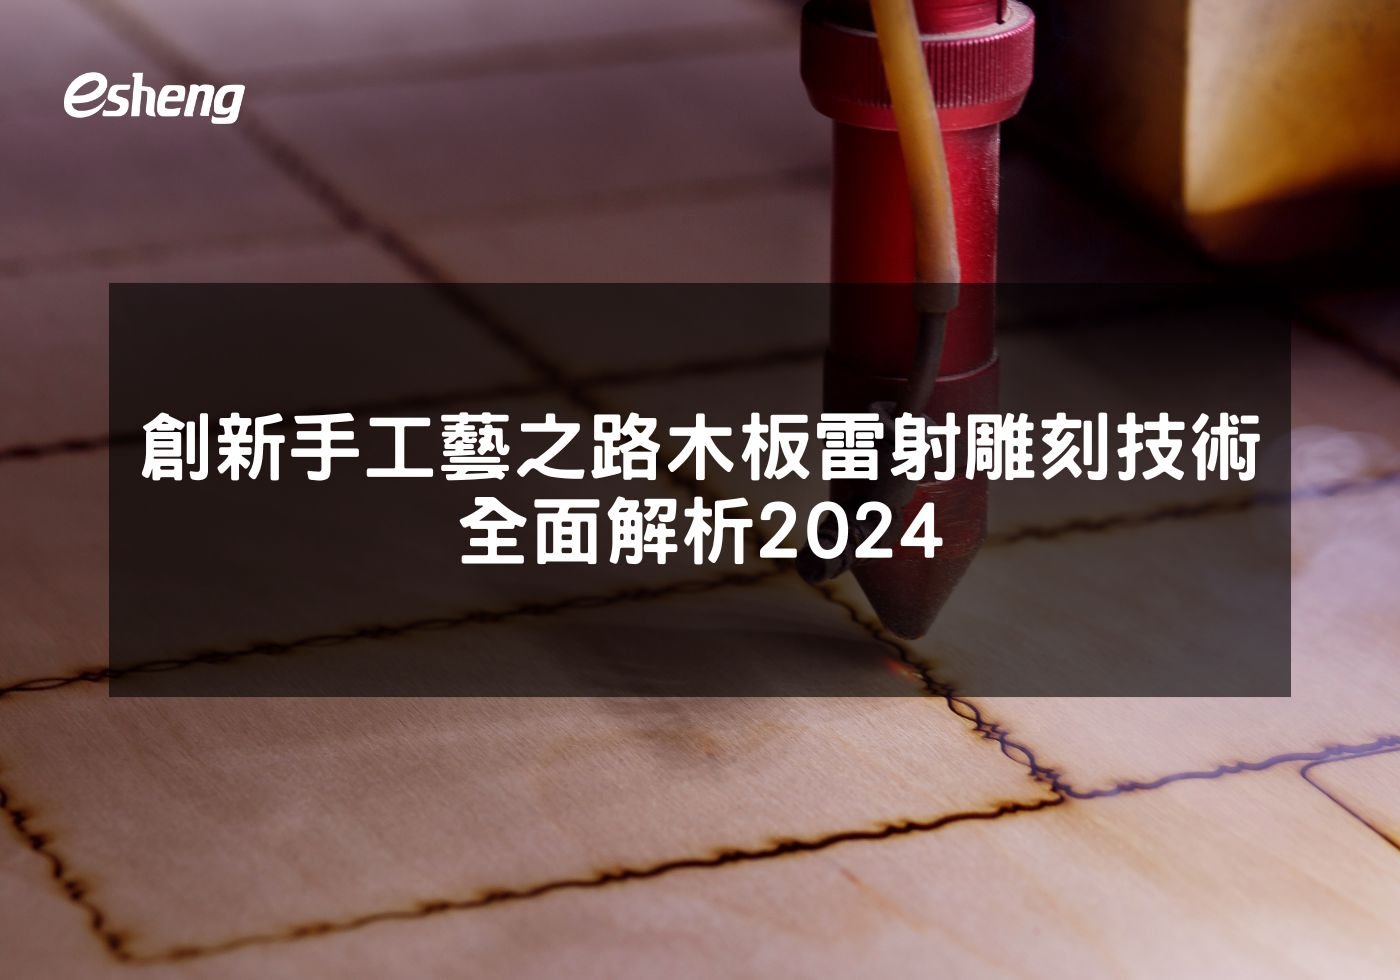 閱讀更多文章 創新手工藝之路台中木板雷射雕刻技術全面解析2024